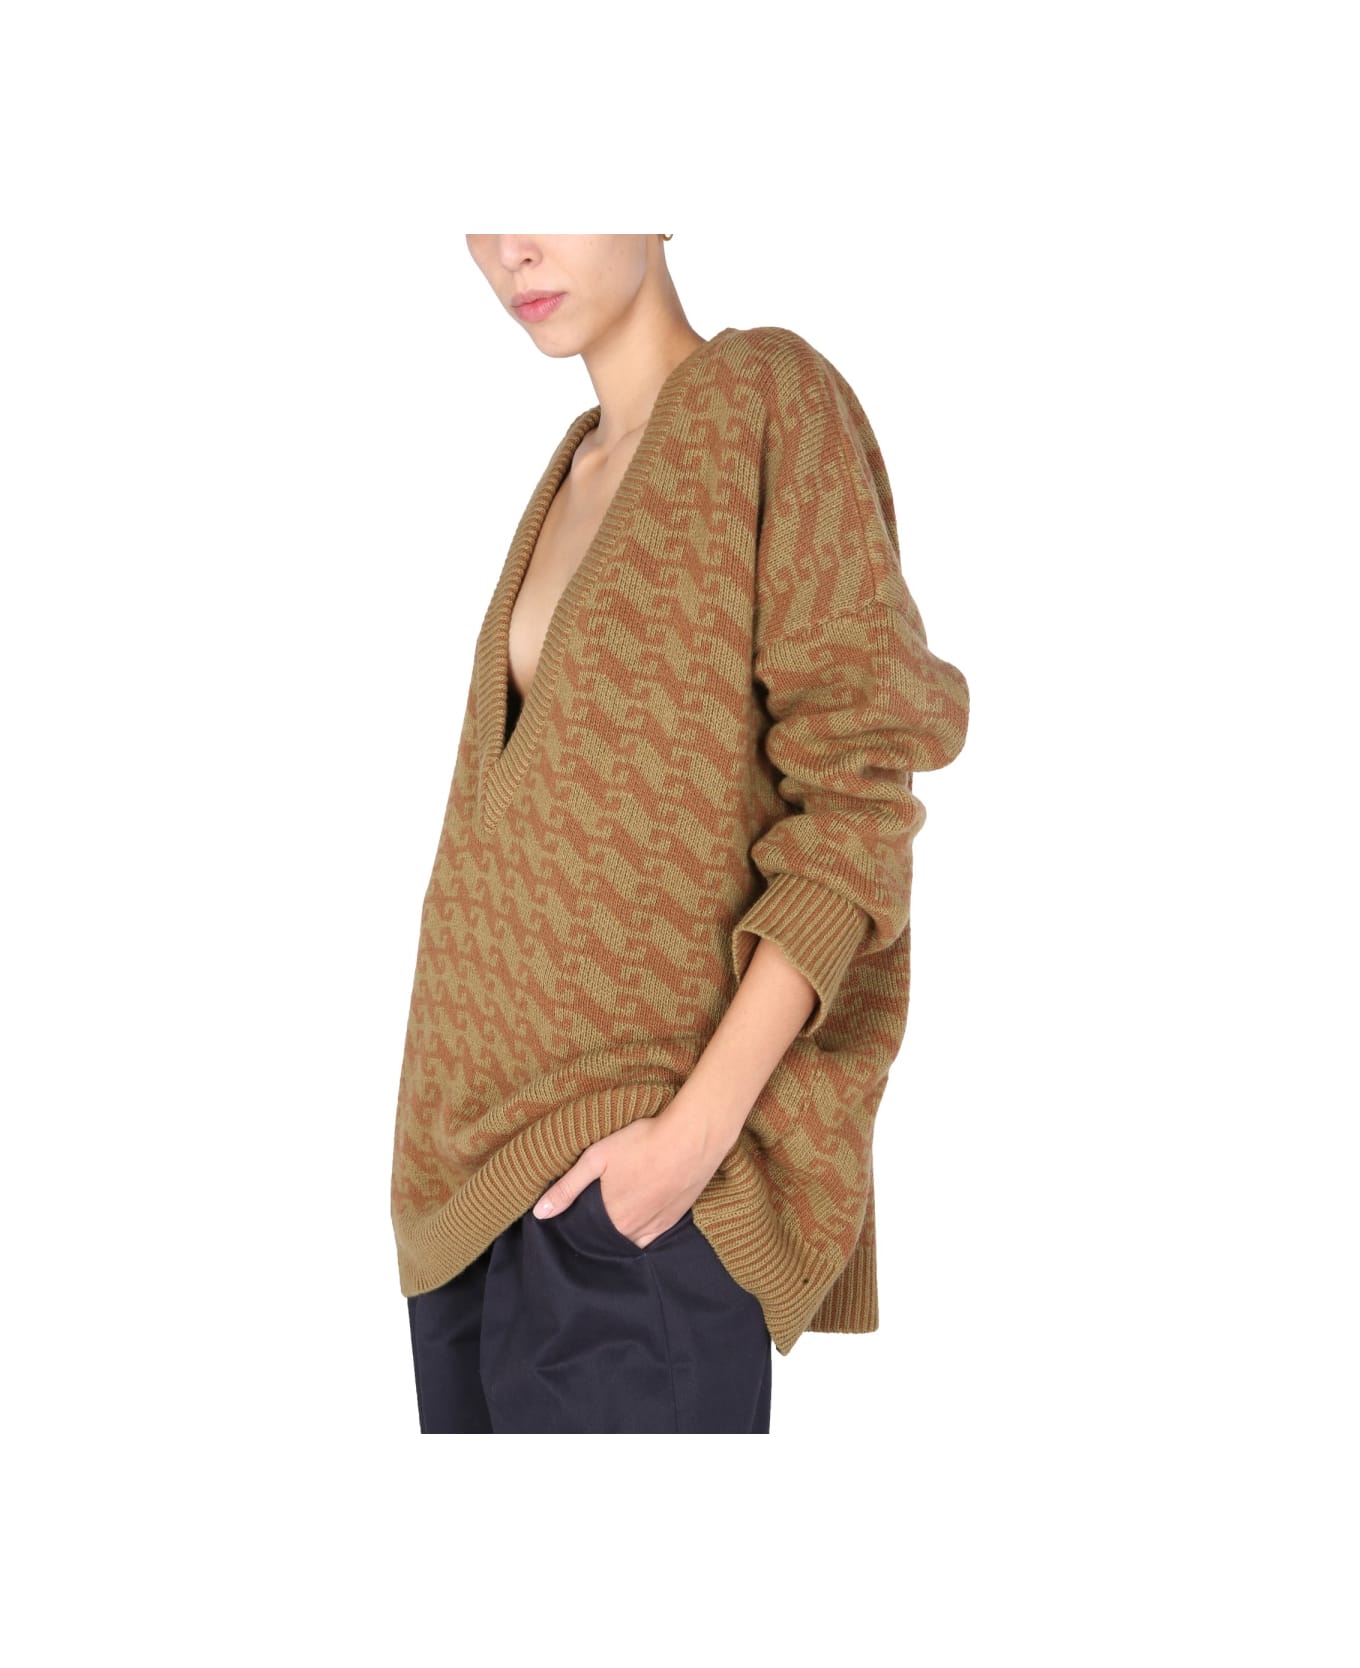 Jejia V-neck Jacquard Sweater - BROWN